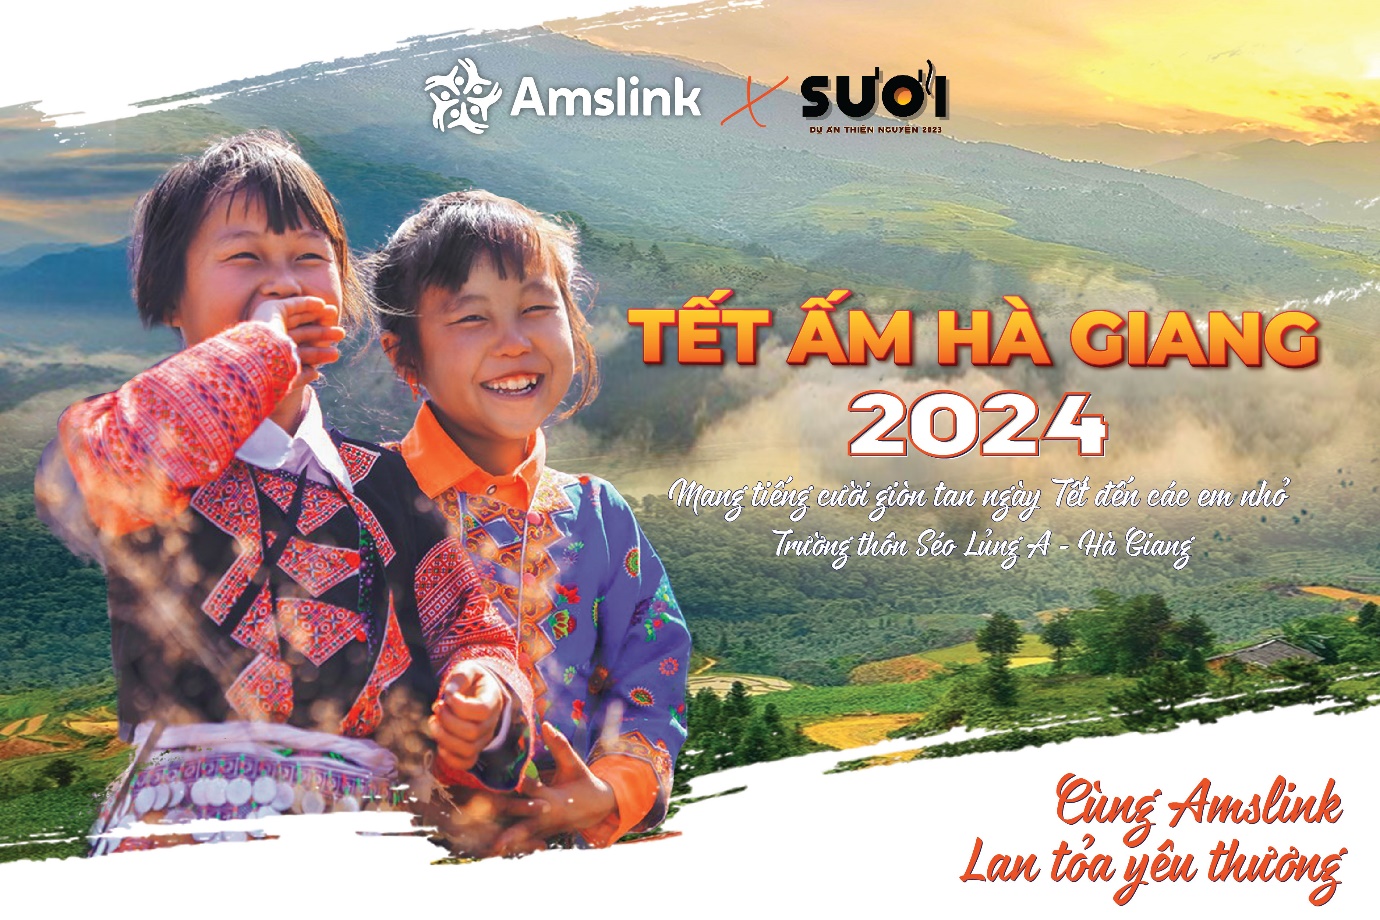 Amslink mang tiếng cười rộn ràng ngày Tết tới các em nhỏ vùng cao qua chương trình “Tết ấm Hà Giang 2024” - Ảnh 1.